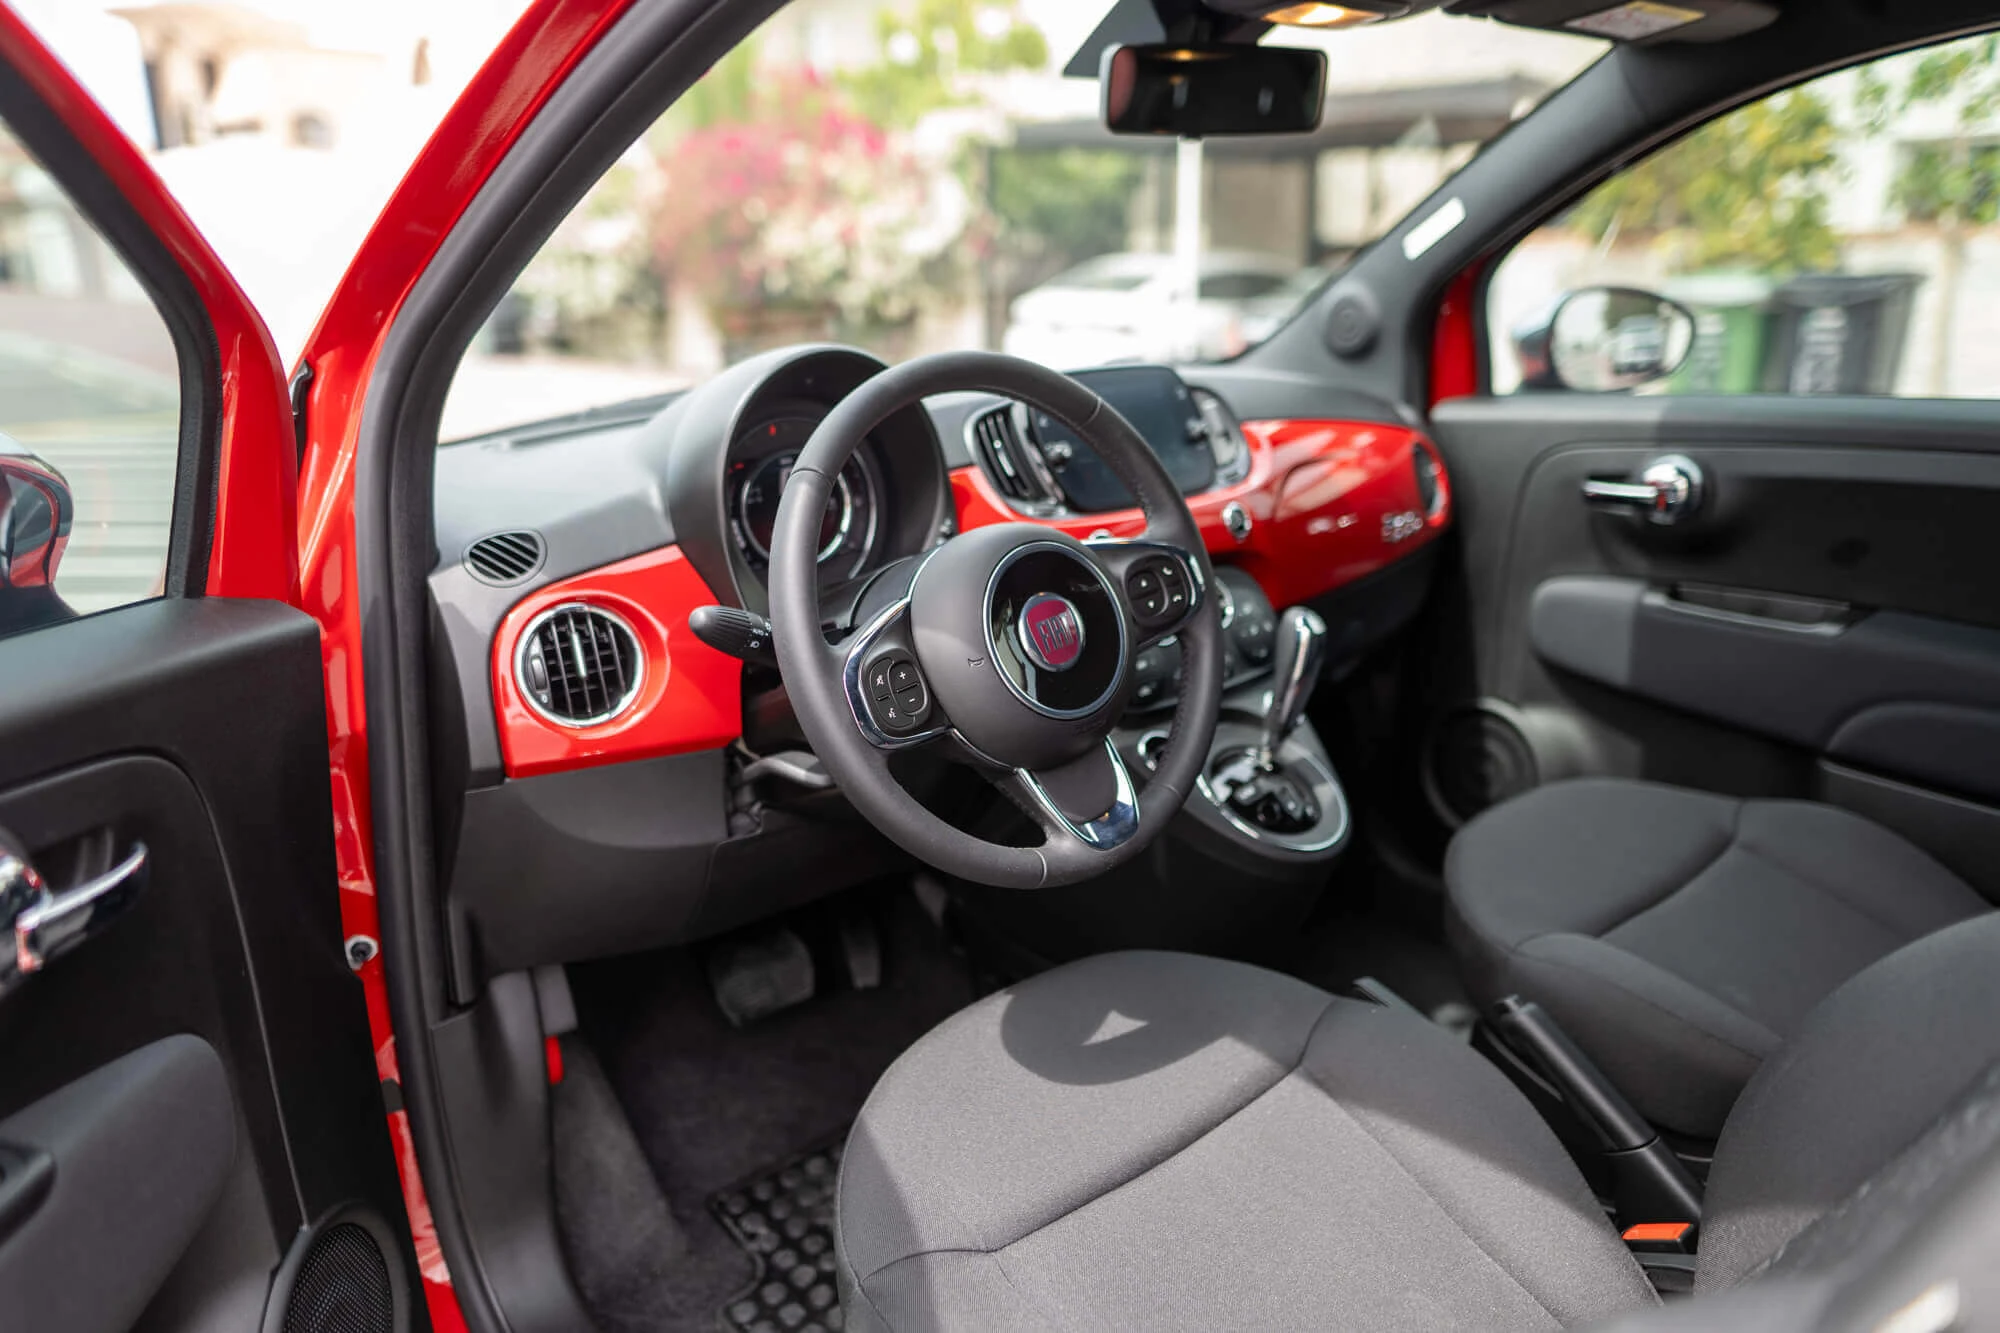 Fiat 500 Cabrio Red